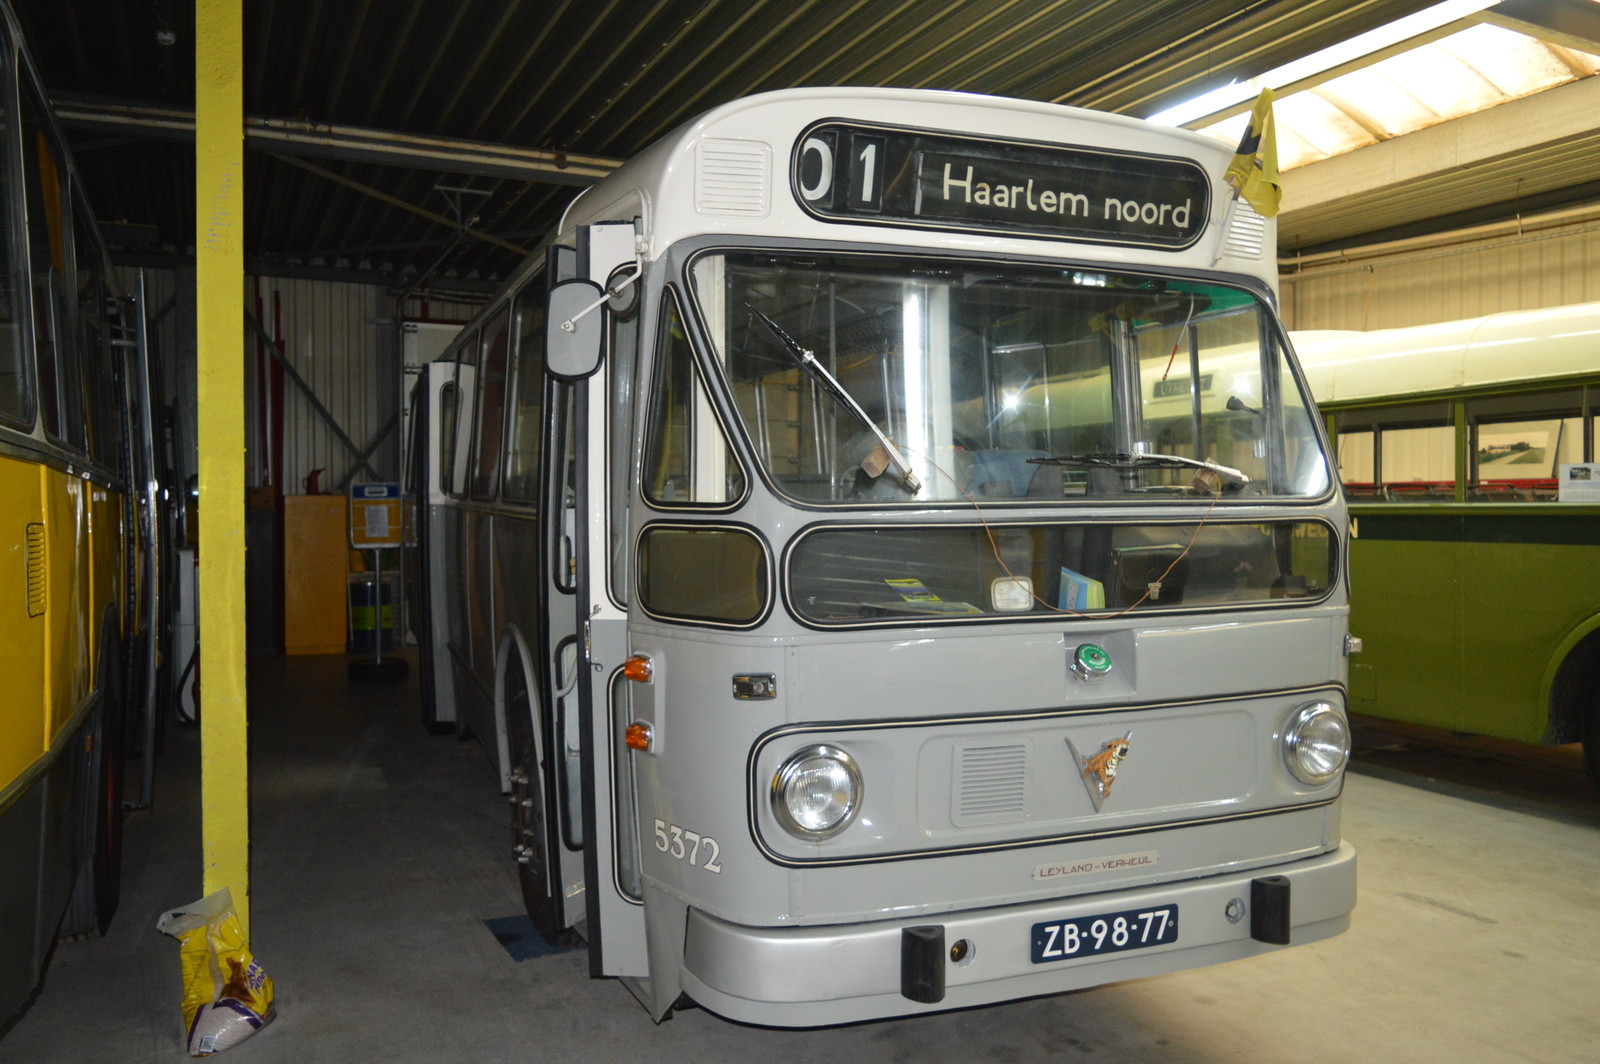 Foto van NZHVM Leyland / Verheul stadsbus 5372